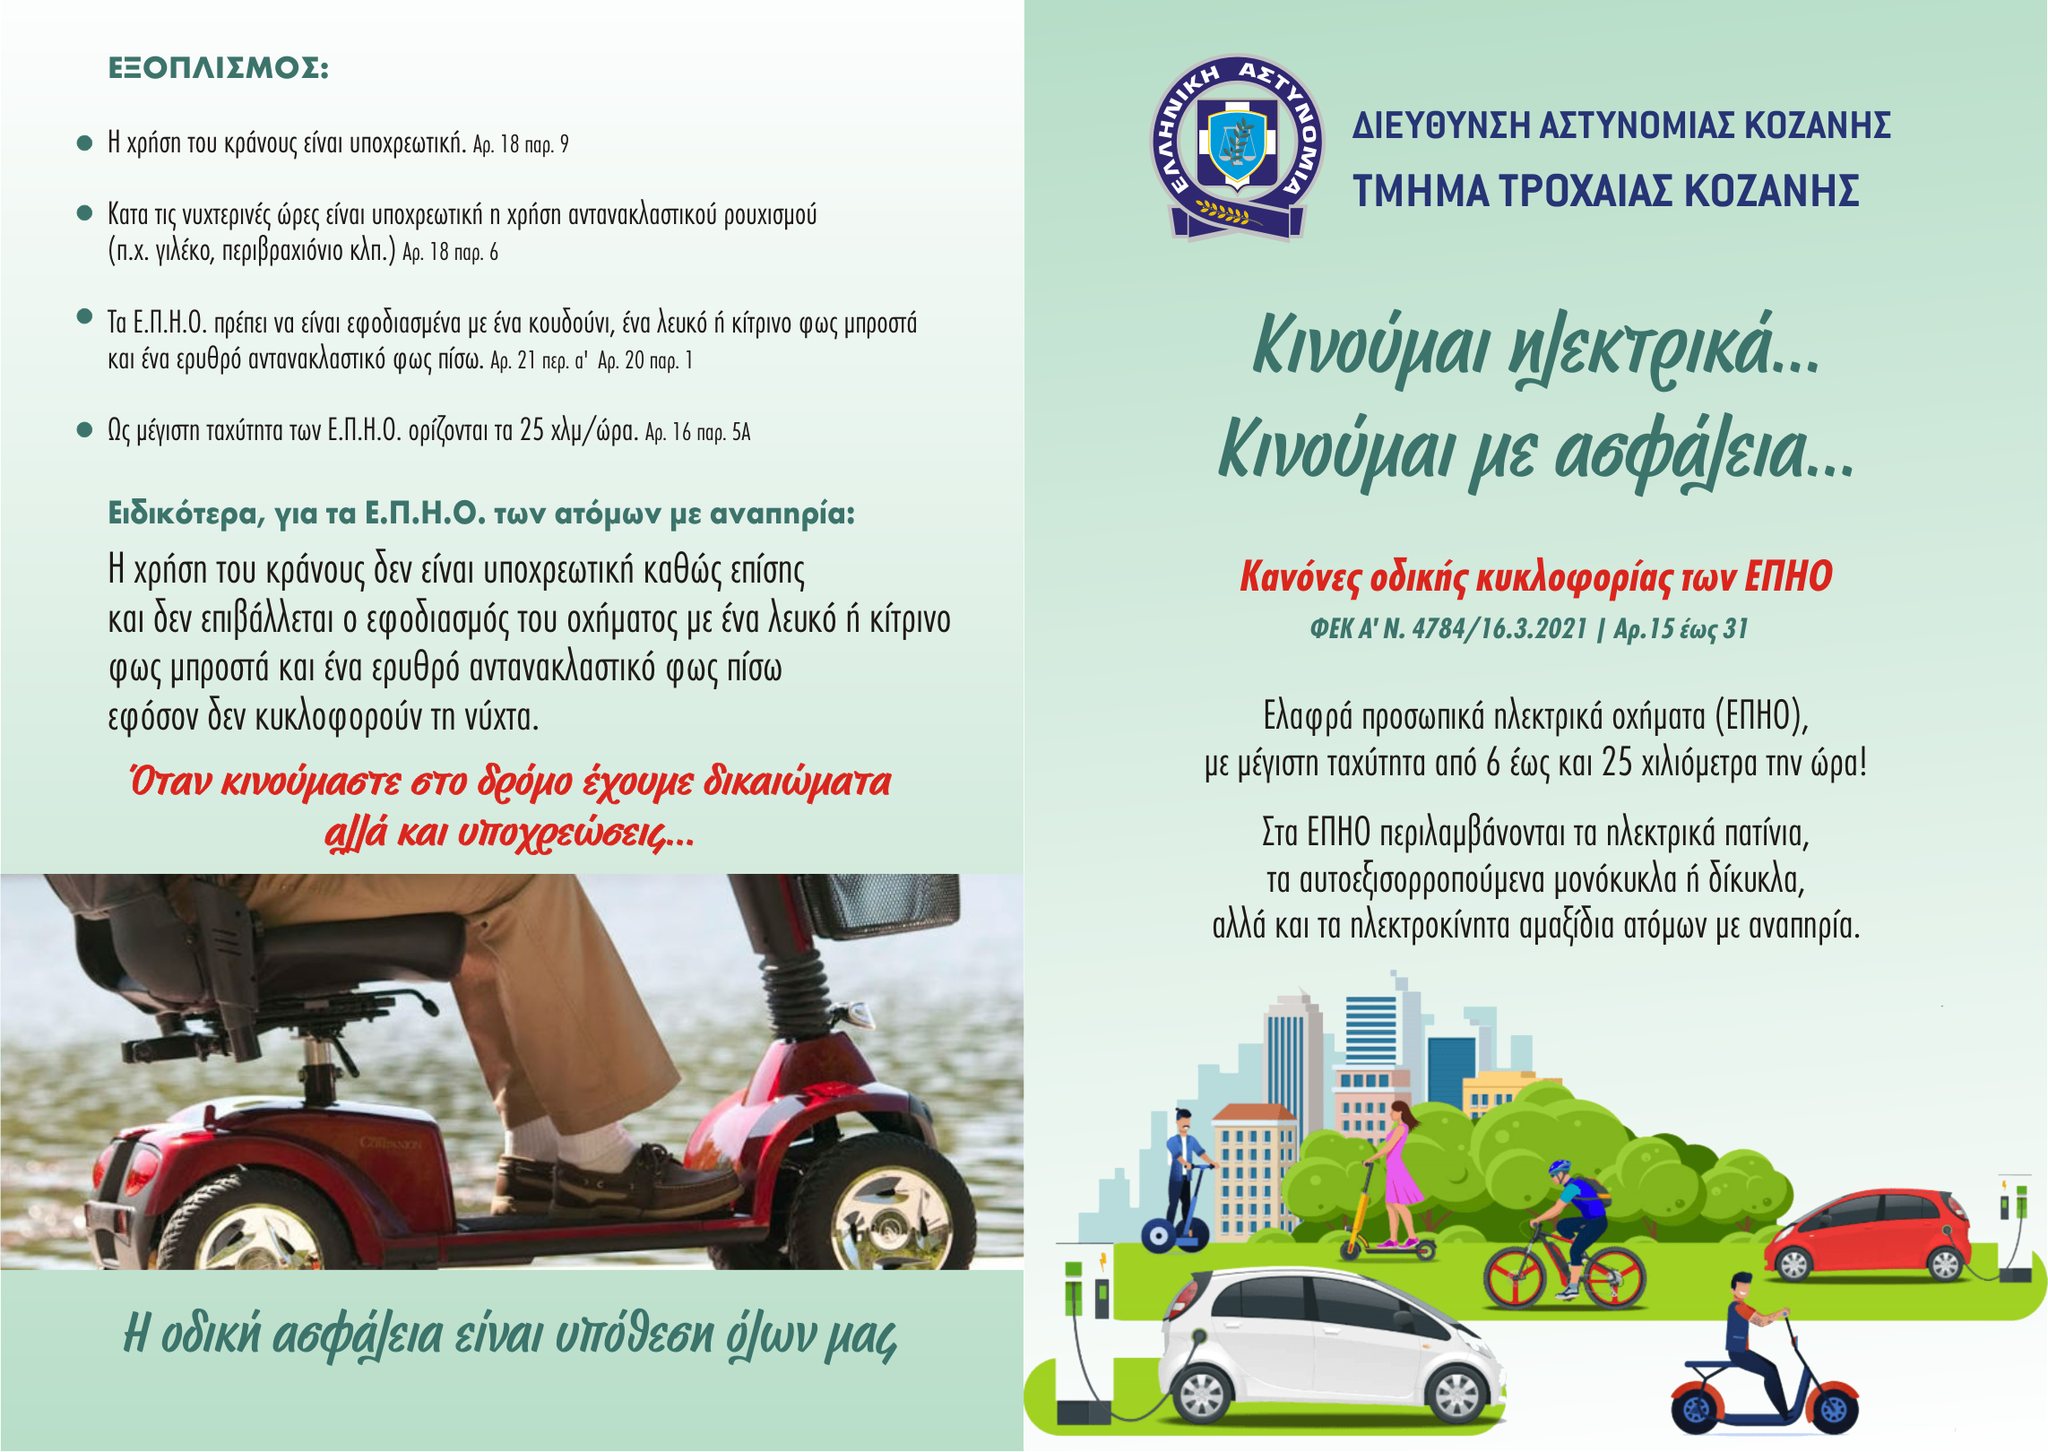 Από την Αστυνομική Διεύθυνση Κοζάνης, μια γόνιμη και χρήσιμη ενημέρωση